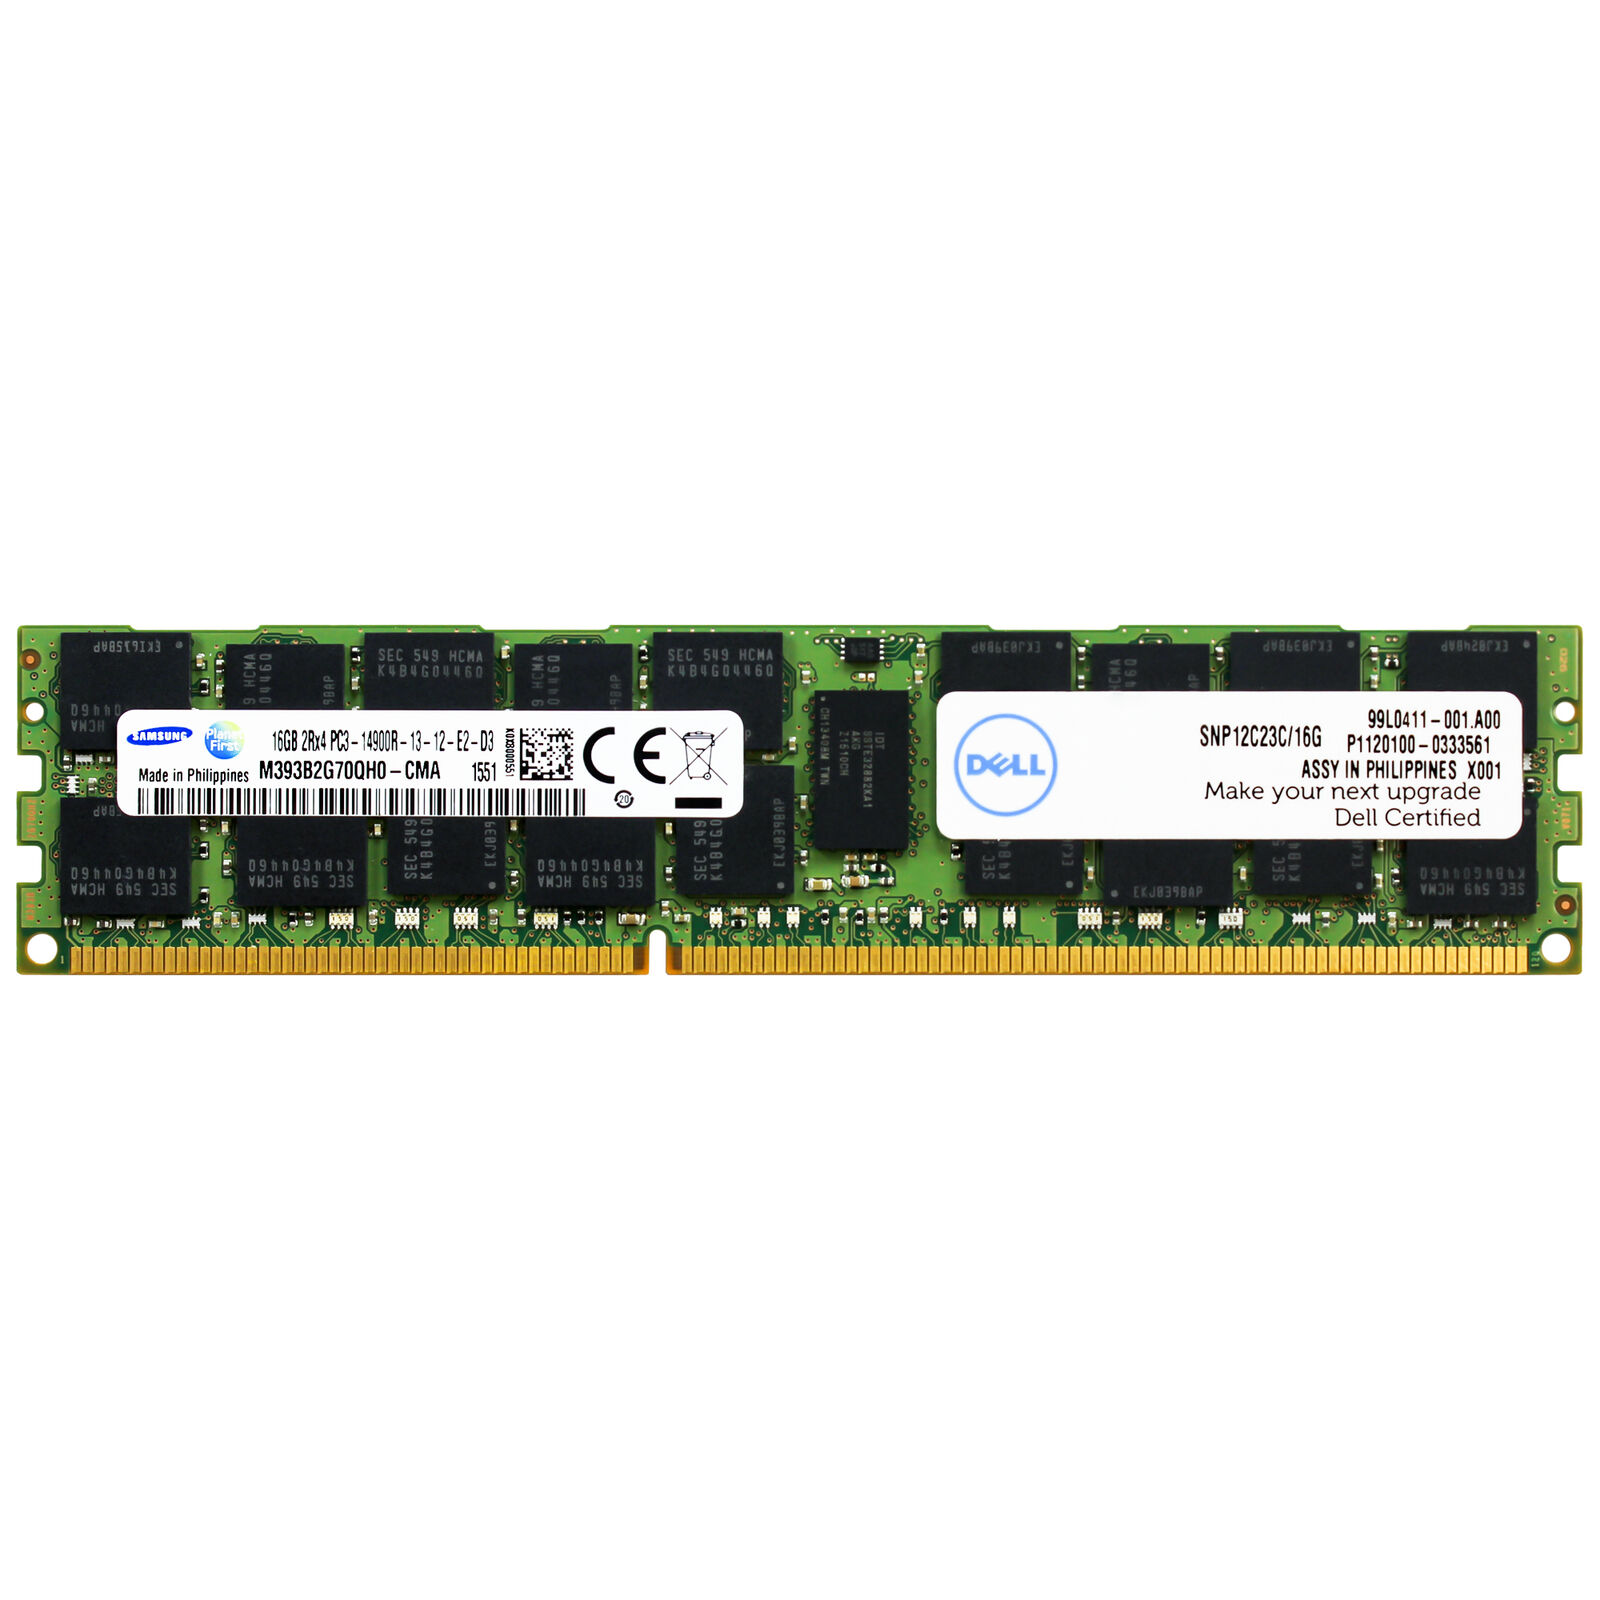 SNP12C23C/16G Dell 16GB PC3-14900R DDR3 1866MHz 2Rx4 1.5V ECC RDIMM Memory RAM